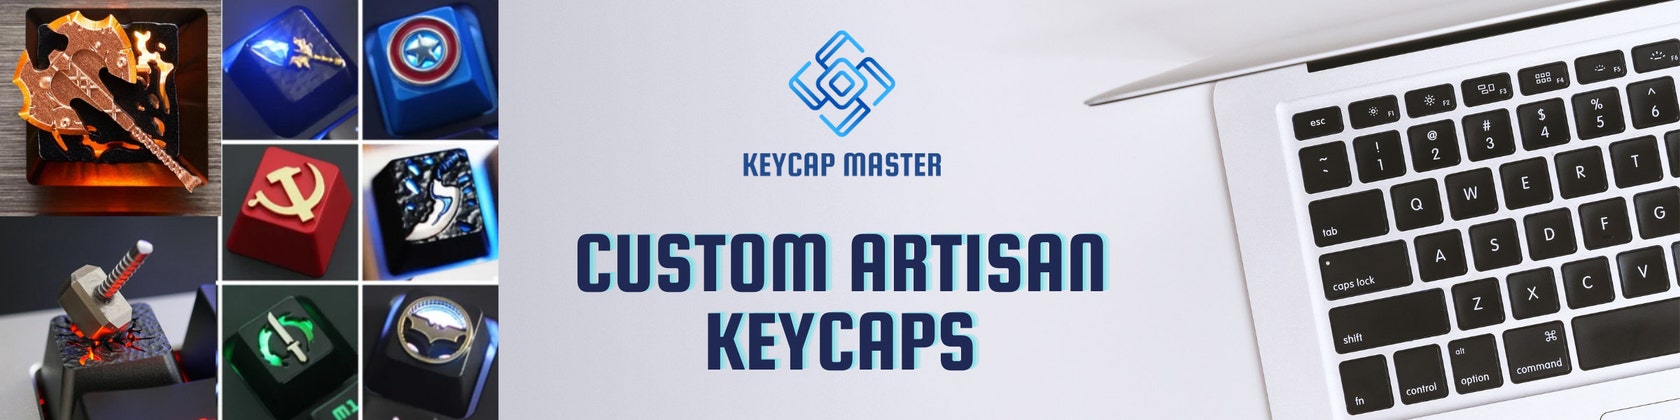 134 Keys PBT Translucent Backlit Keycap Top Level Keycaps For